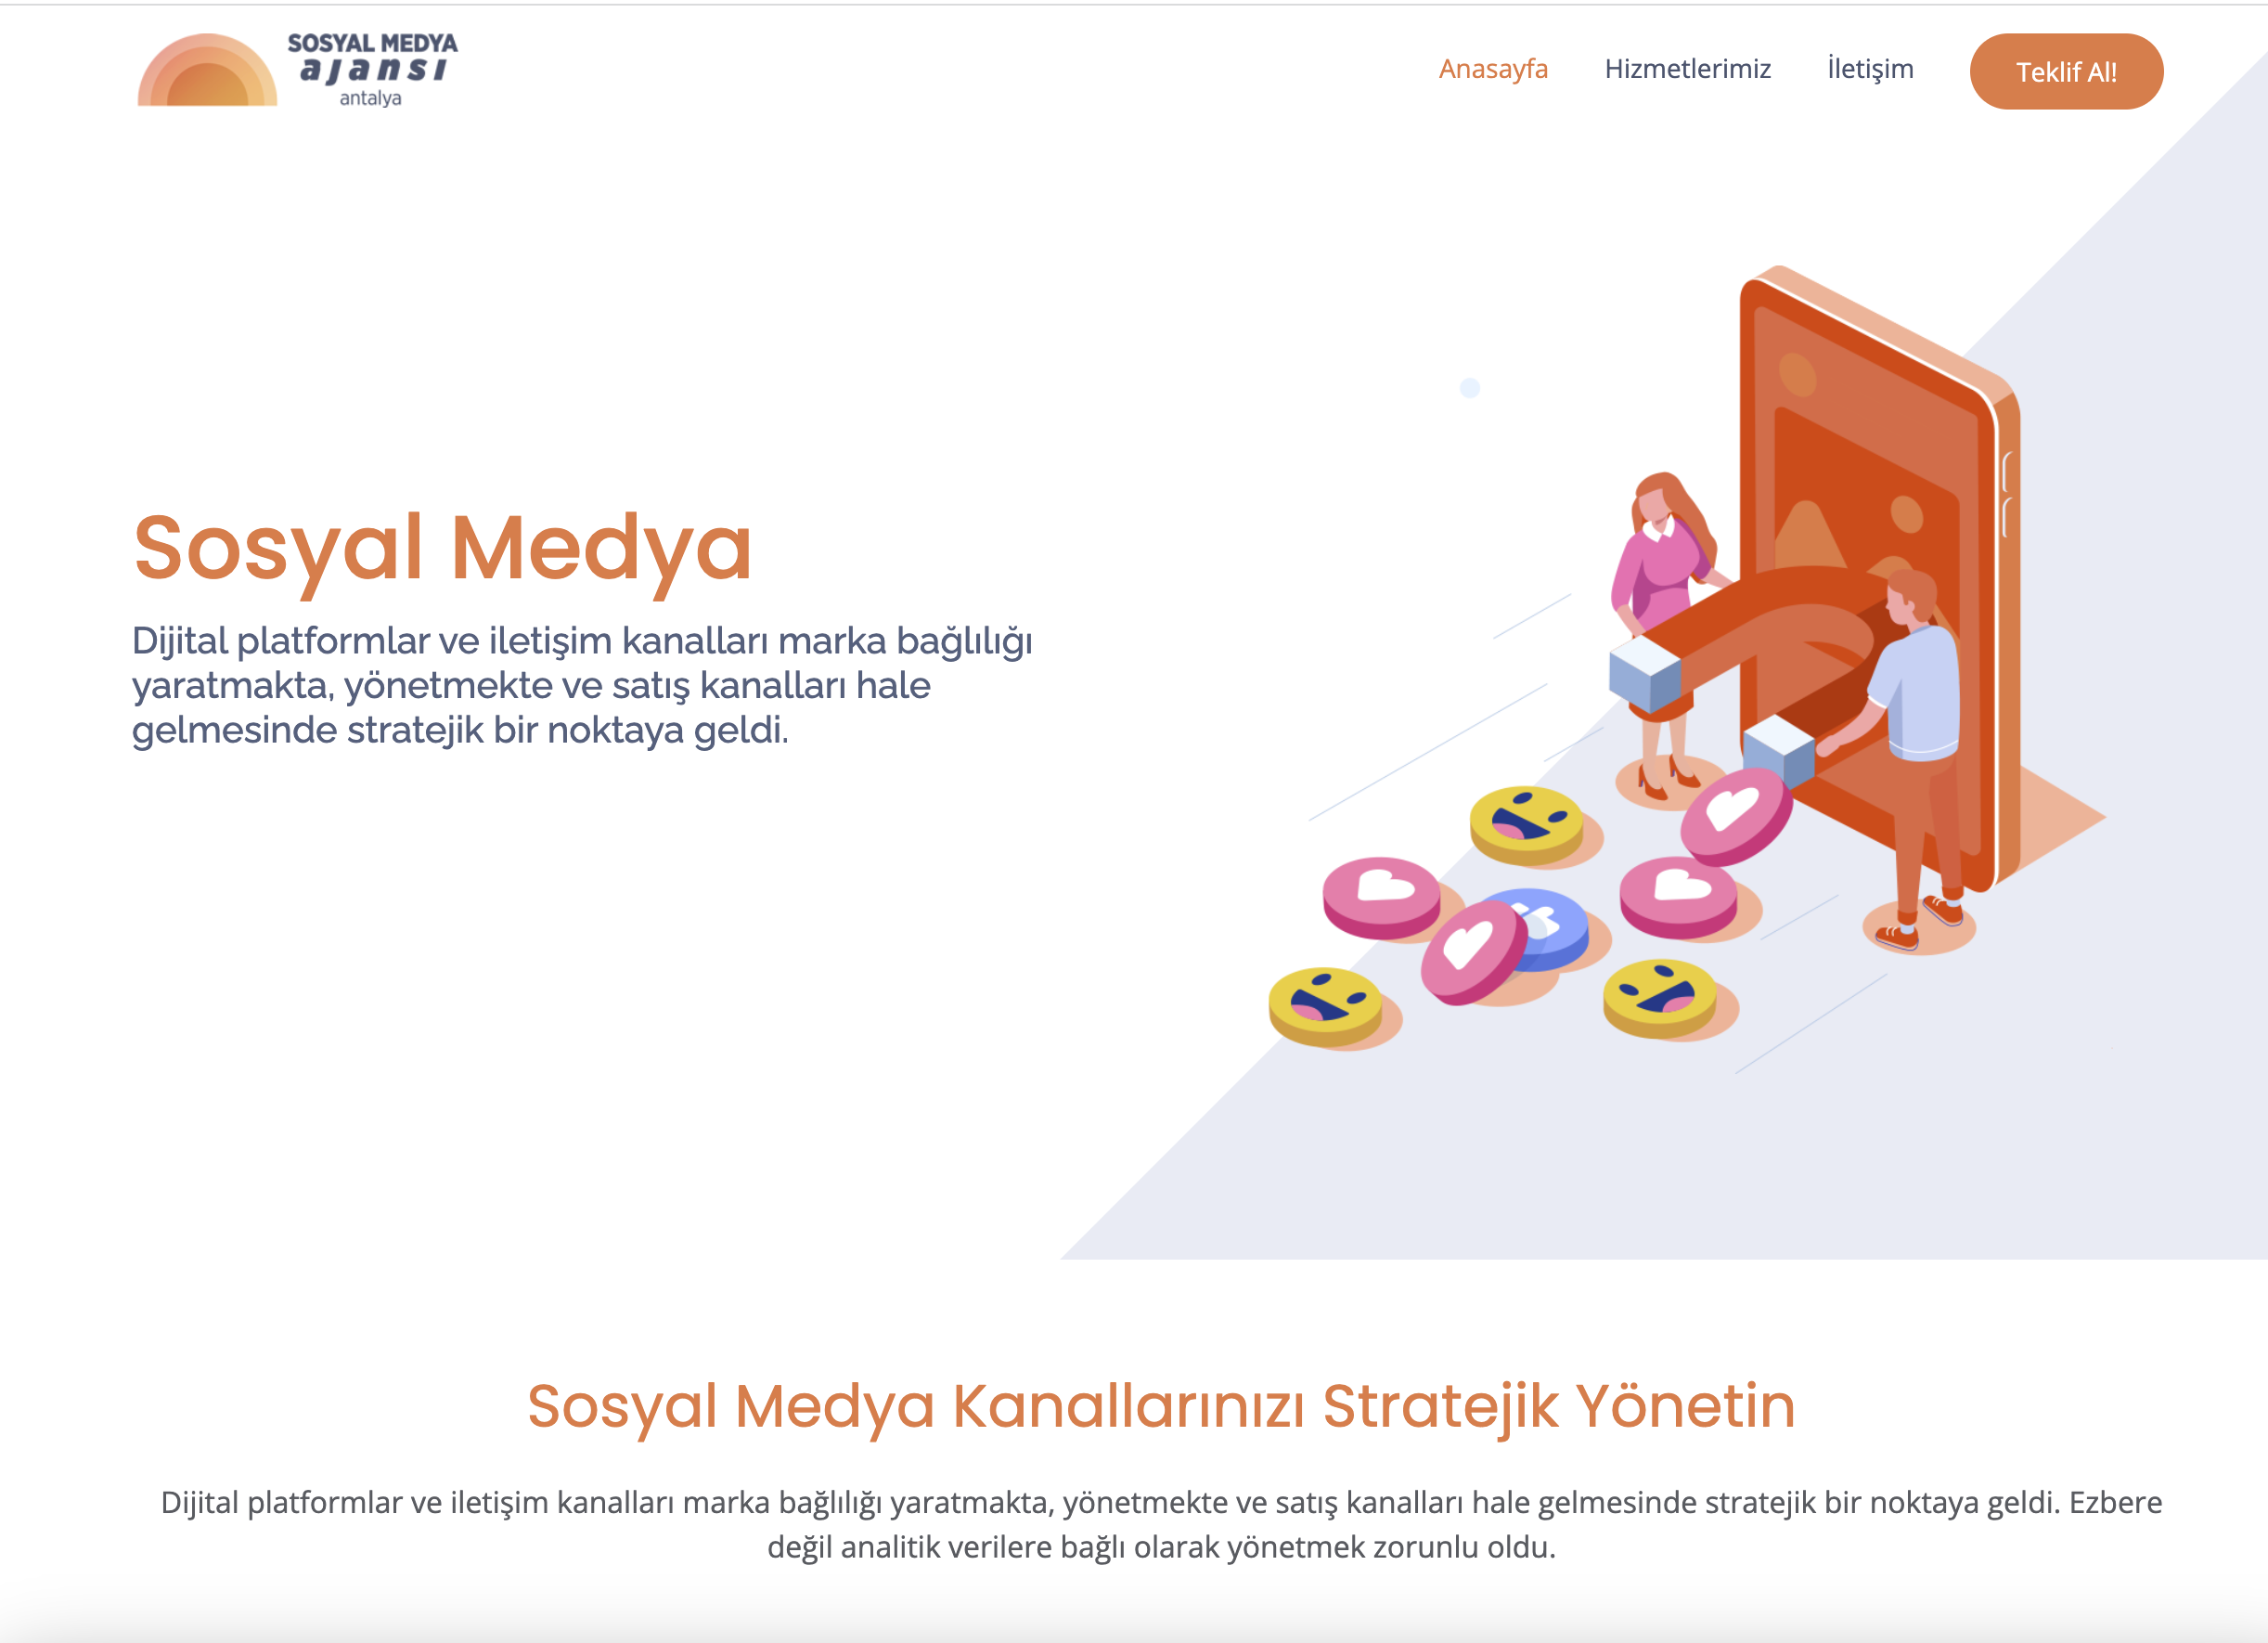 Antalya Sosyal Medya Ajansı